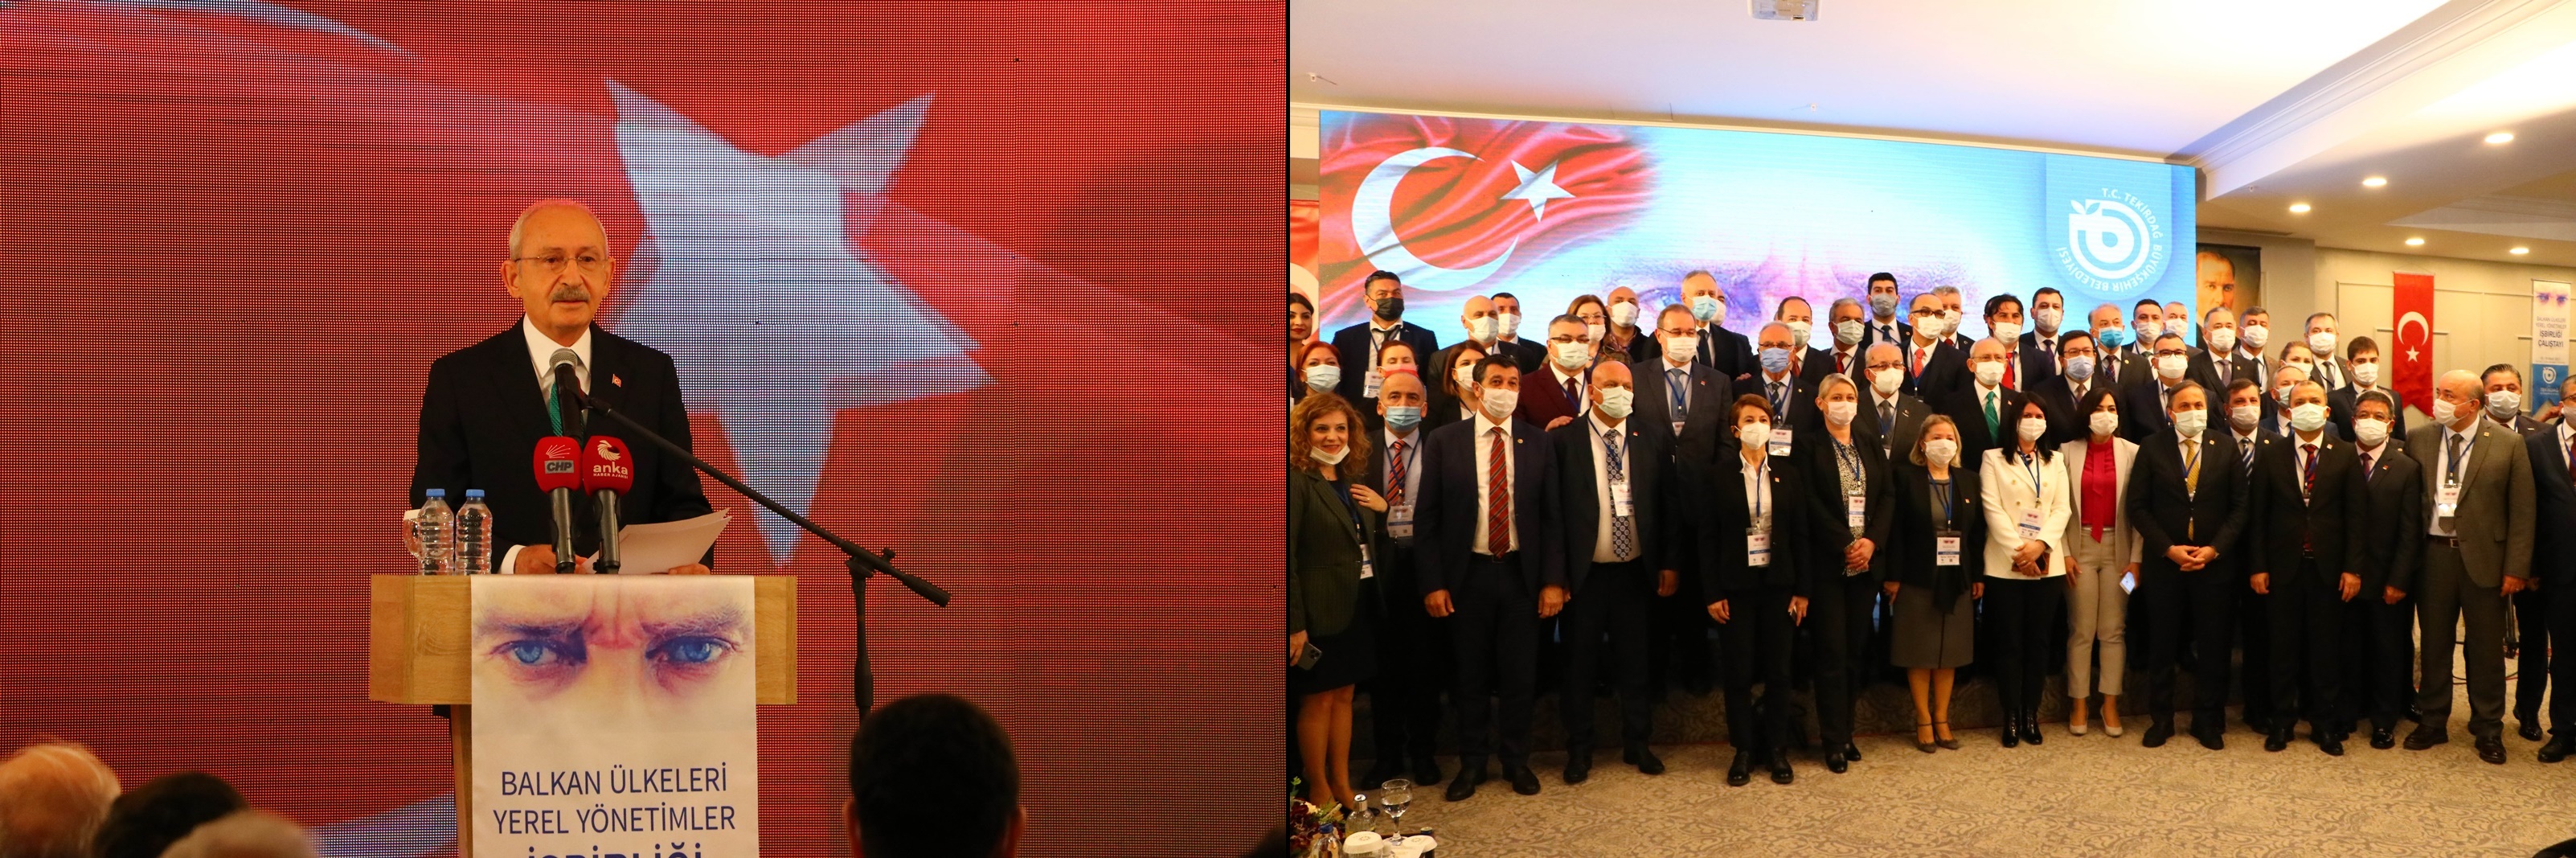 Kemal Kılıçdaroğlu, Balkan Çalıştayı’nda konuştu